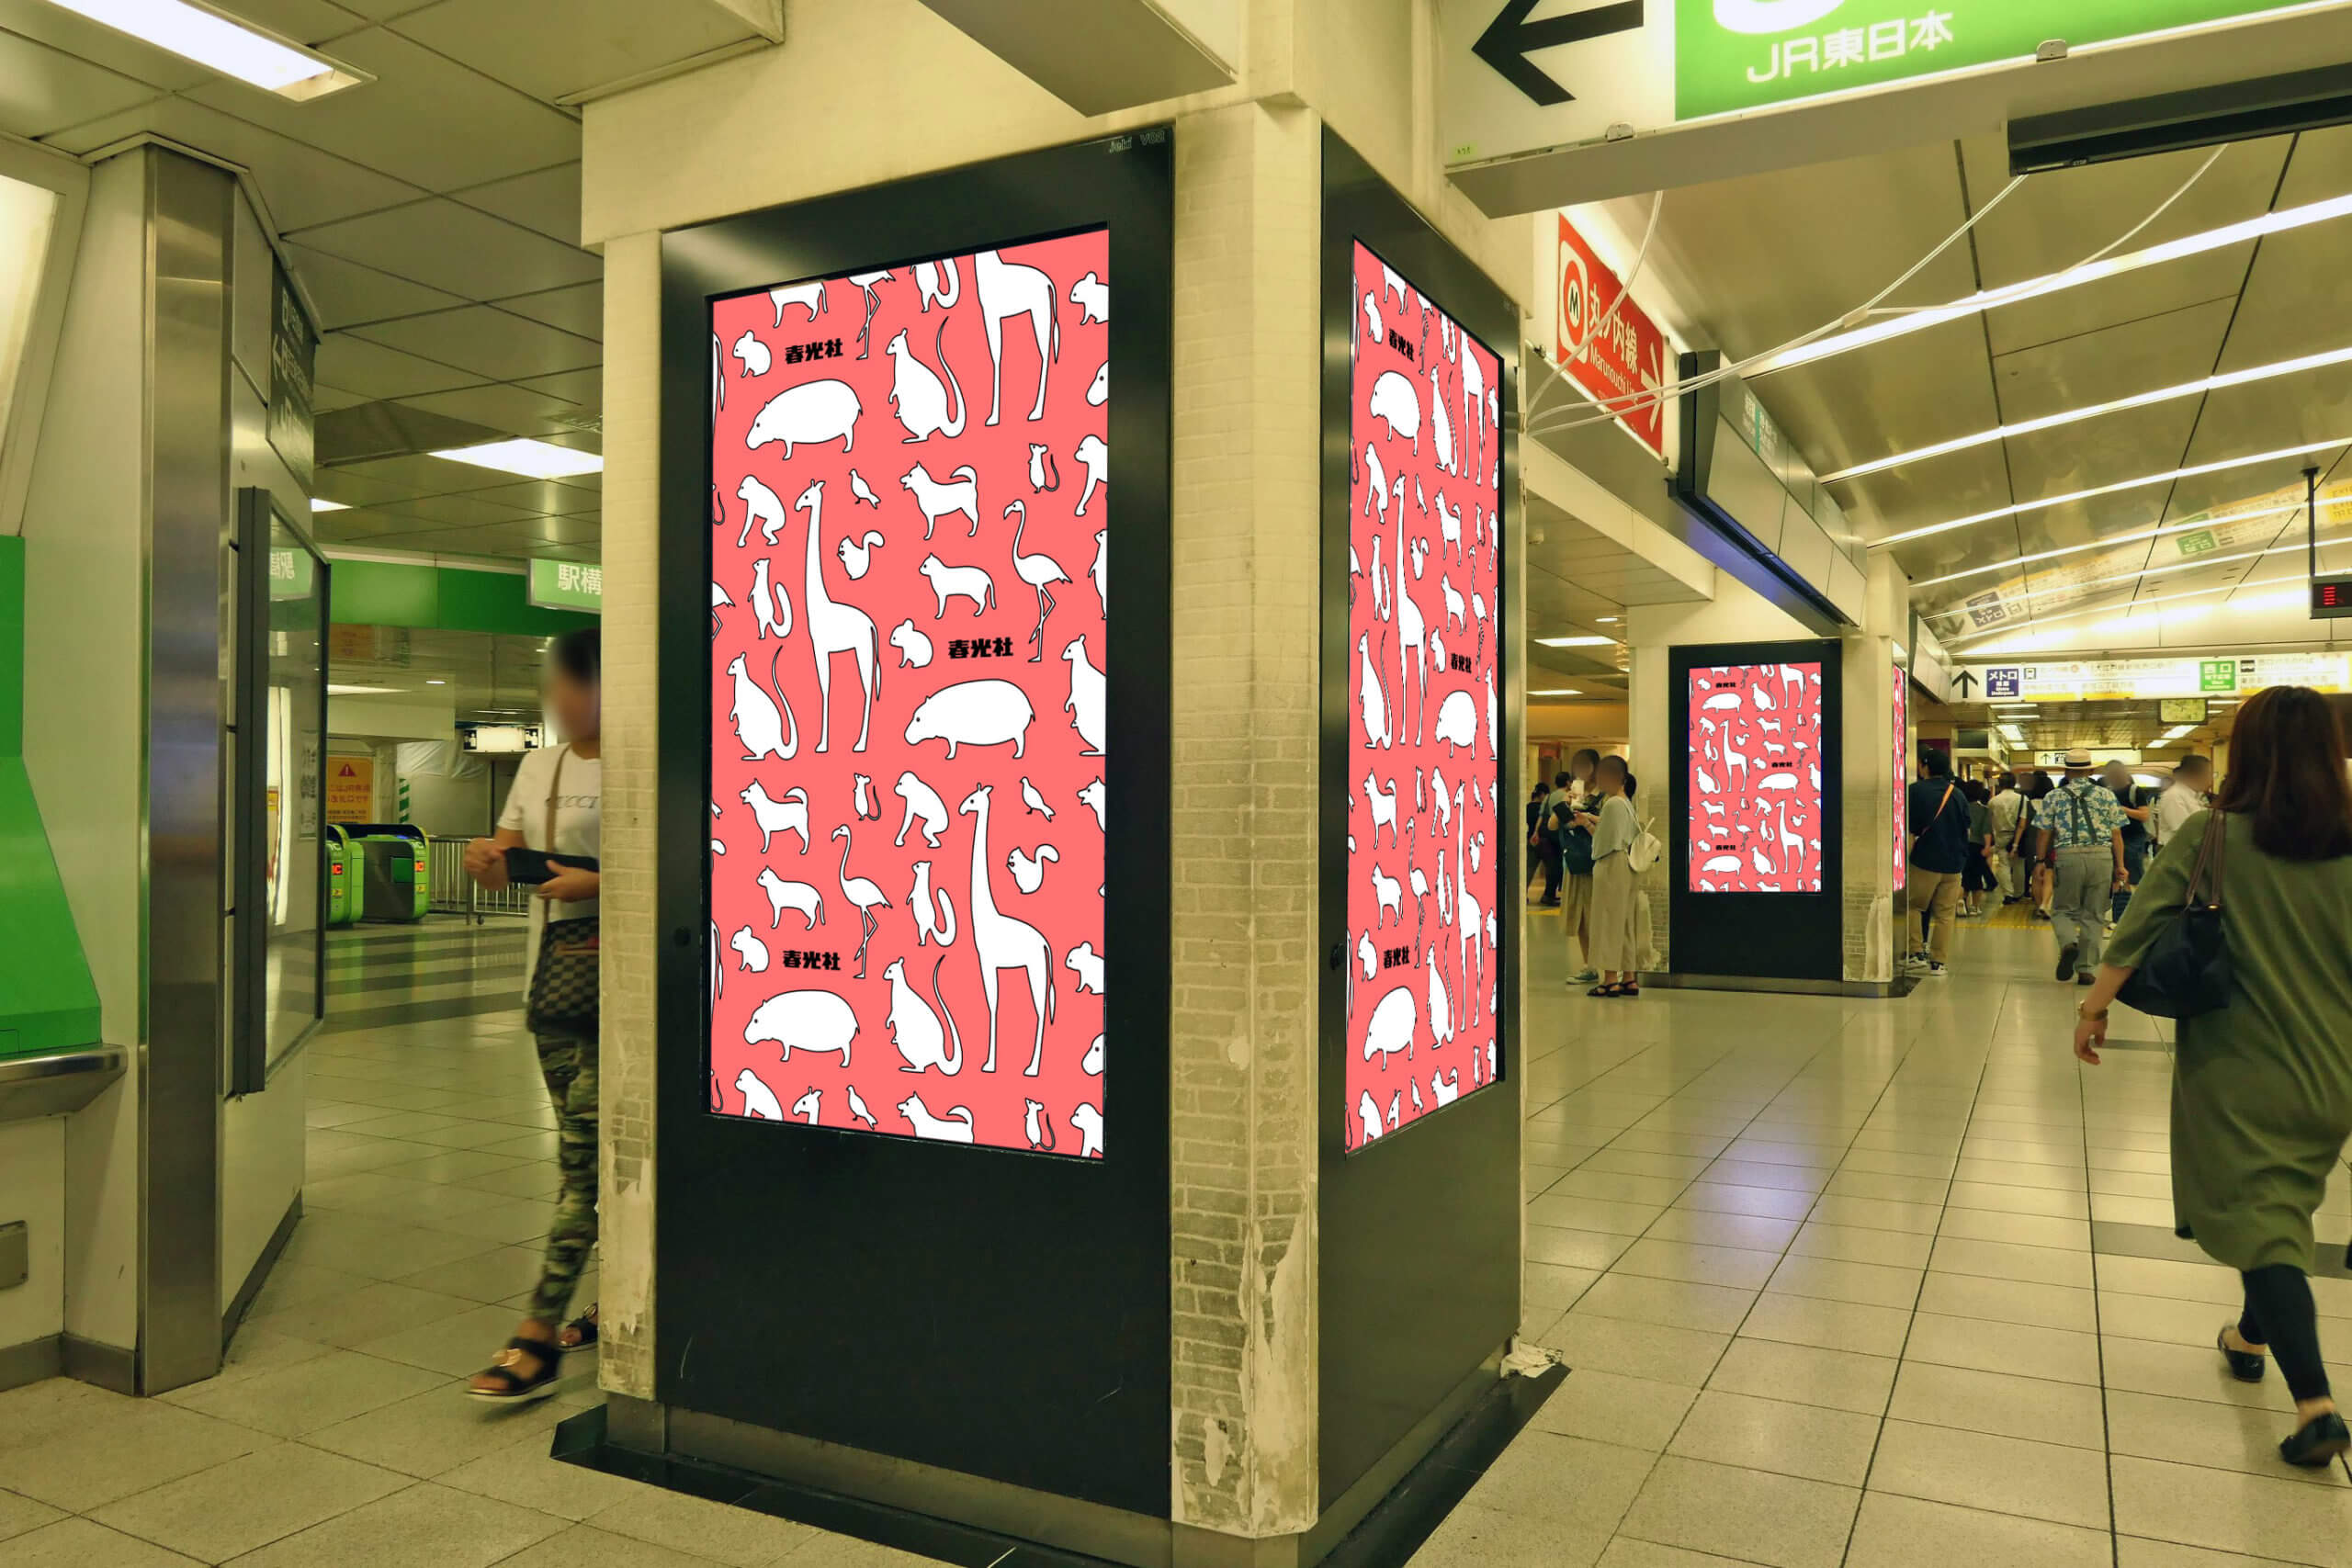 JR東日本新宿駅東口改札外に設置されている縦型デジタルサイネージ